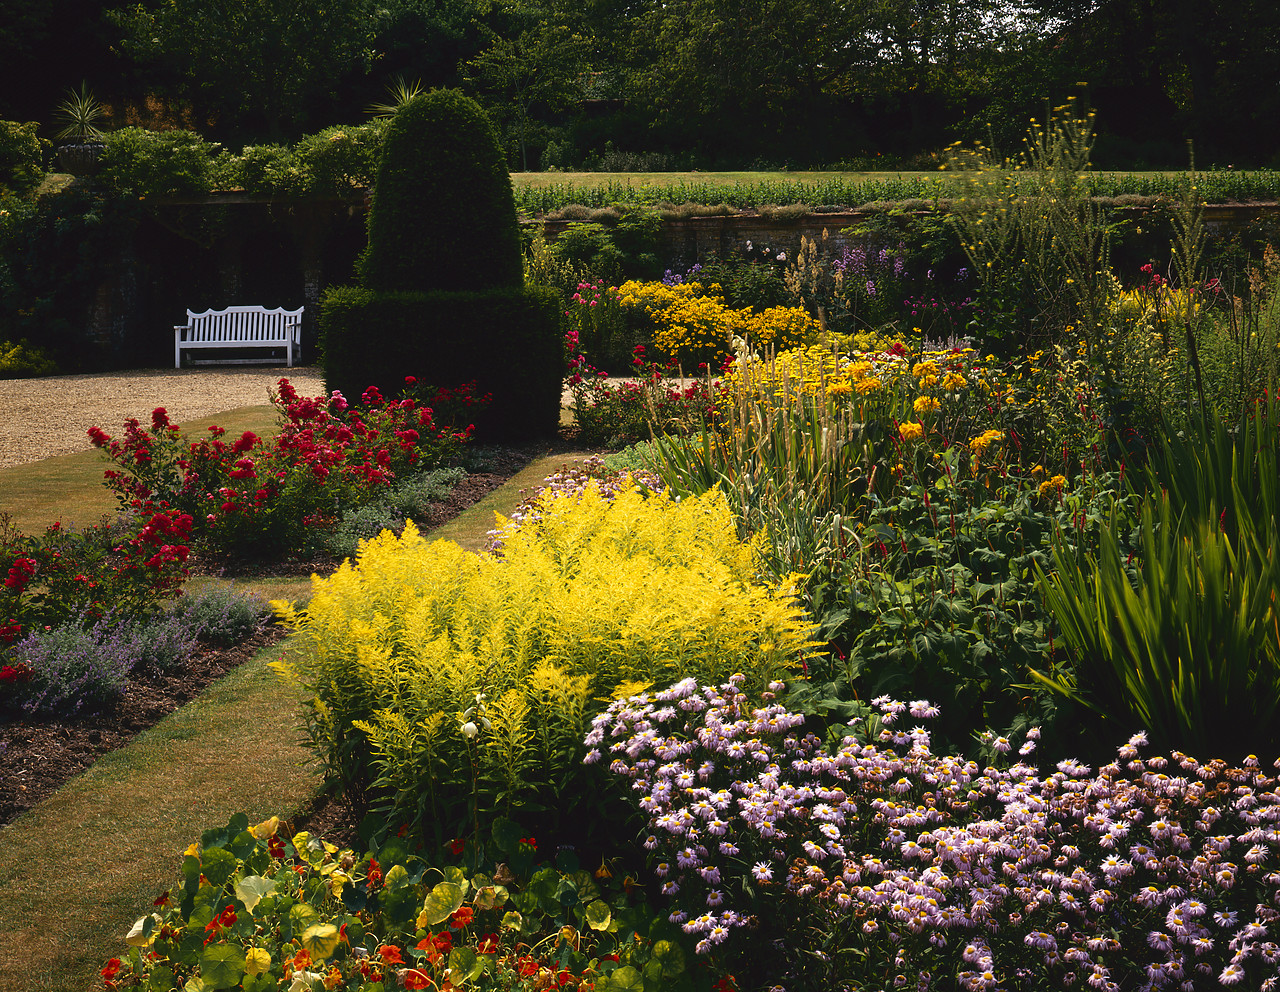 #944817-1 - Blickling Hall Gardens, Blickling, Norfolk, England